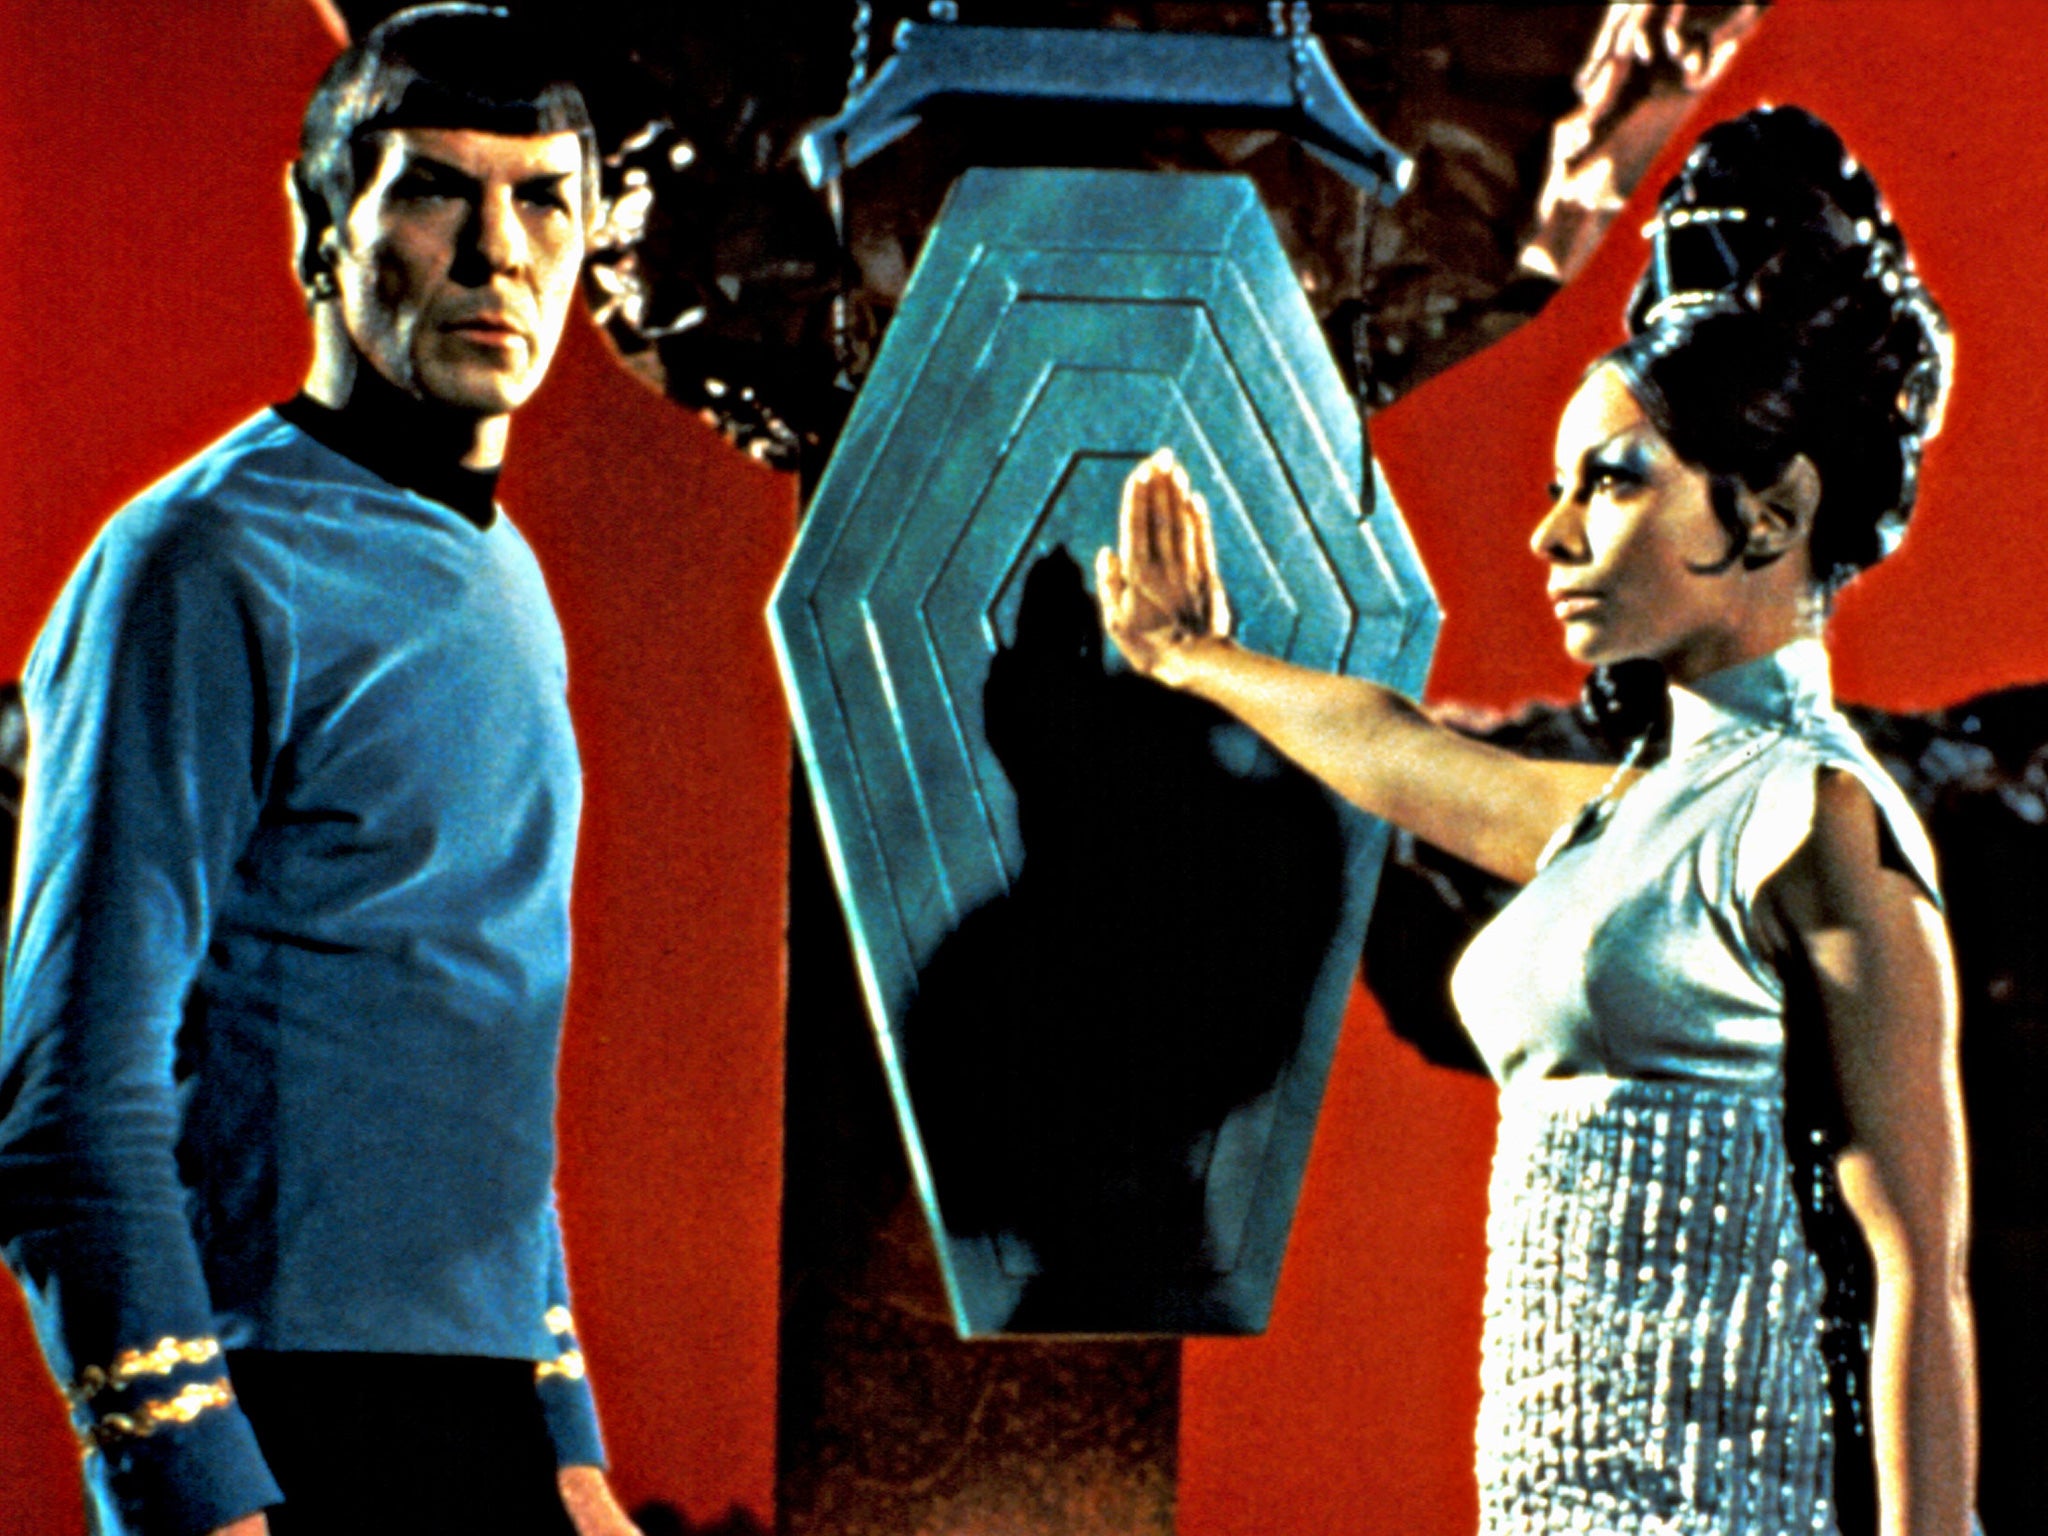 Leonard Nimoy (as Spock) and Arlene Martel in an episode of 'Star Trek', 1967.